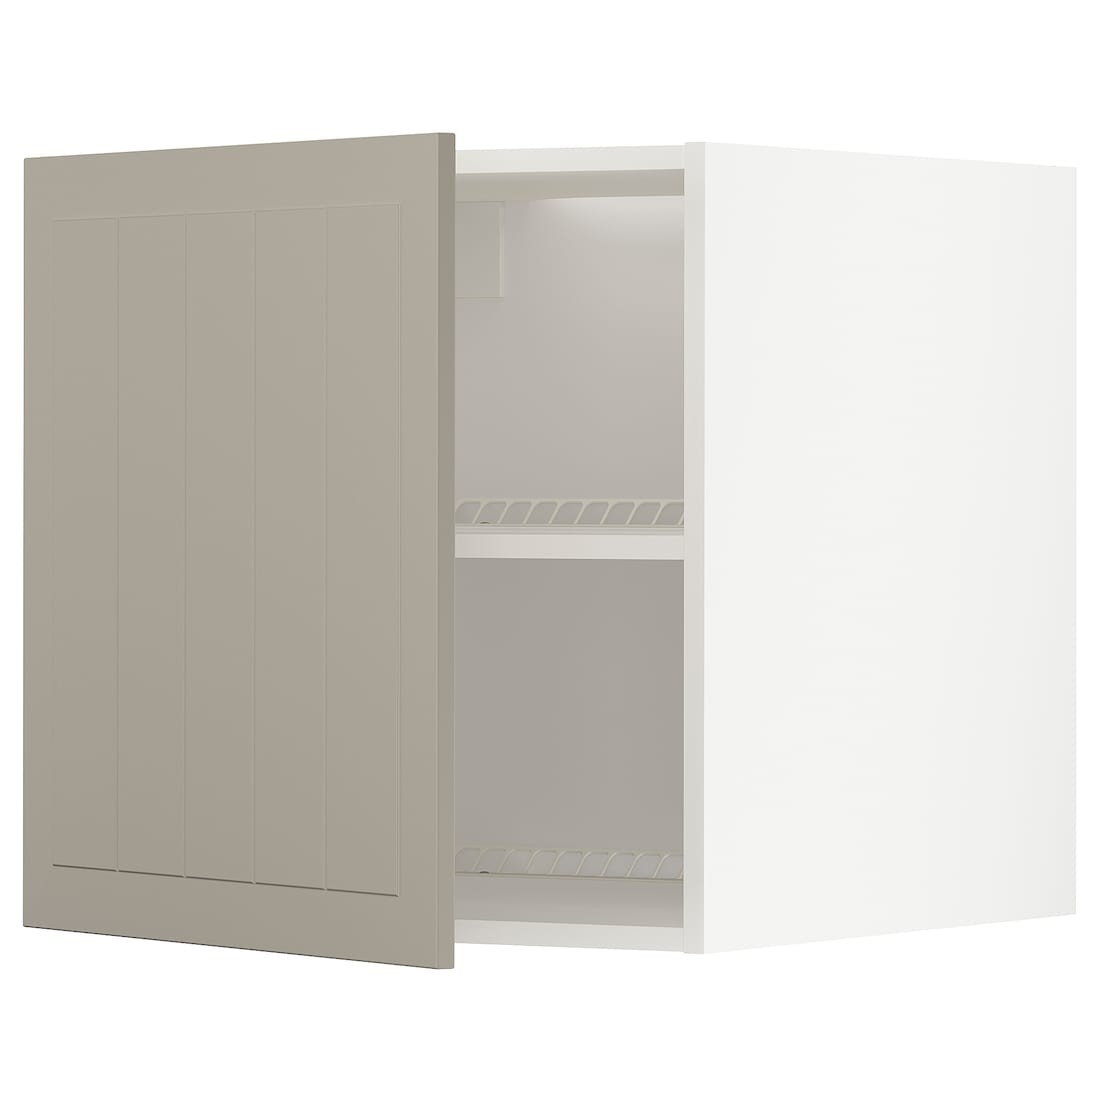 METOD МЕТОД Верхня шафа для холодильника / морозильника, білий / Stensund бежевий, 60x60 см